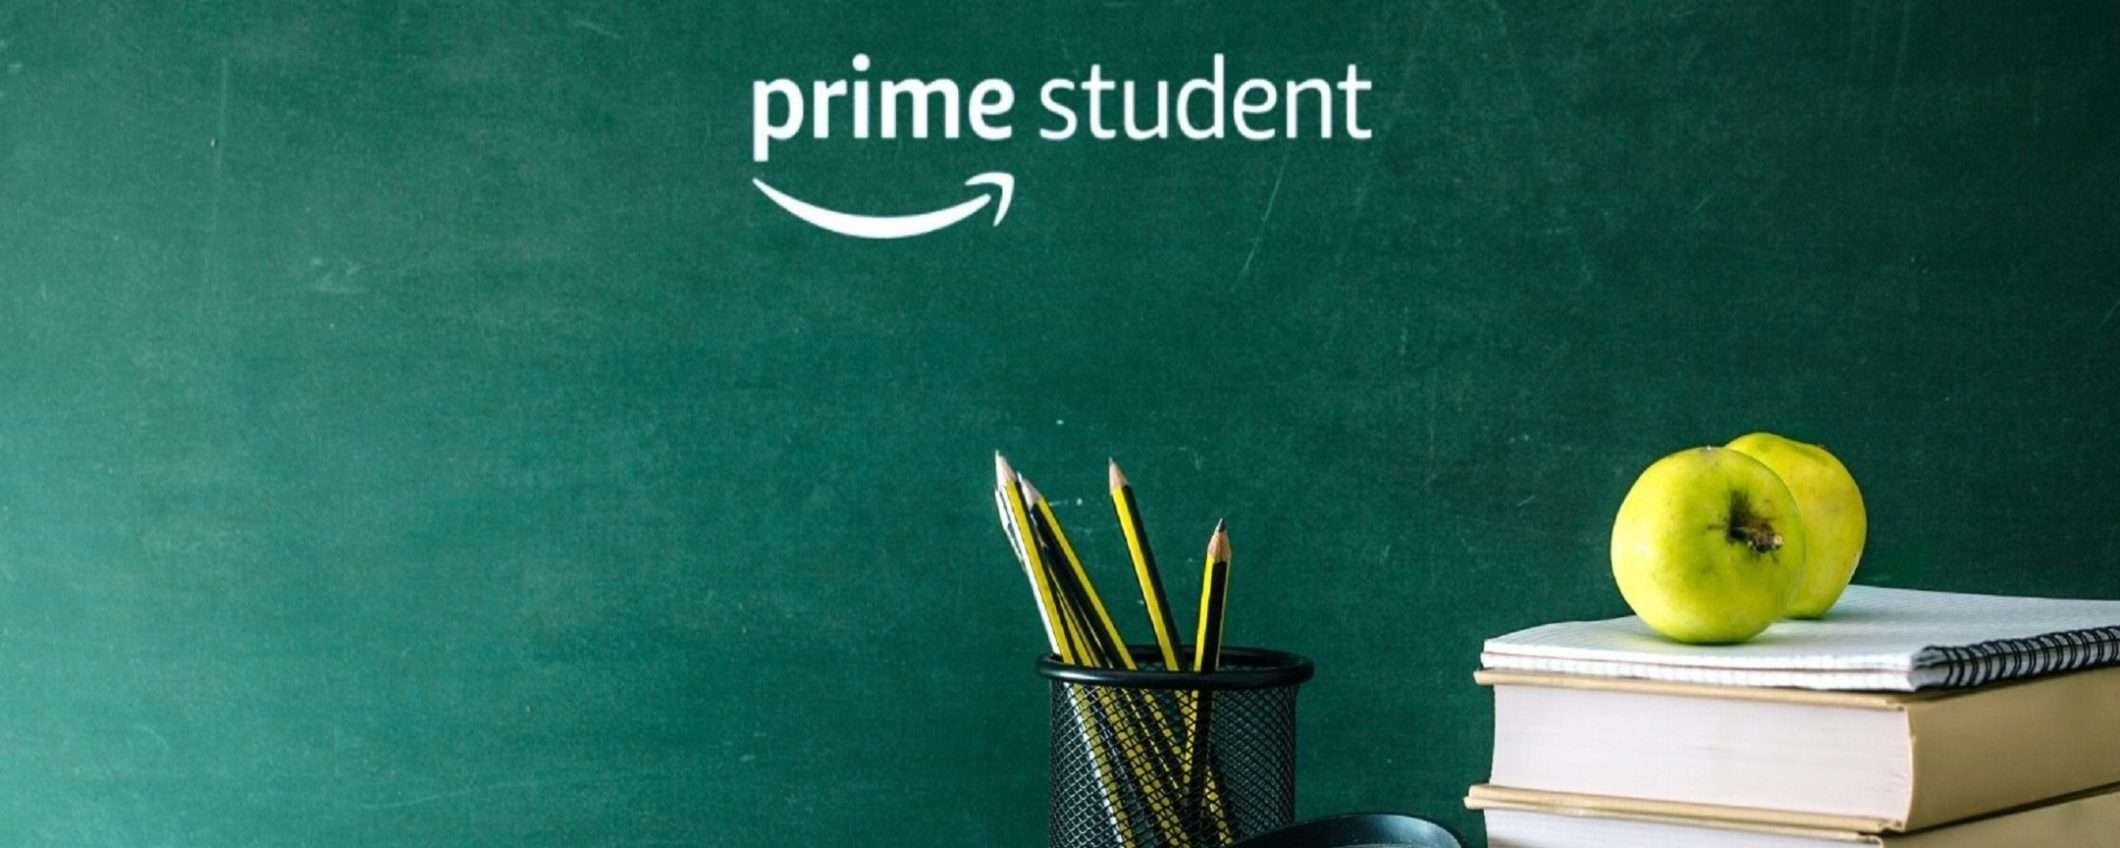 Come attivare e utilizzare Amazon Prime Student?